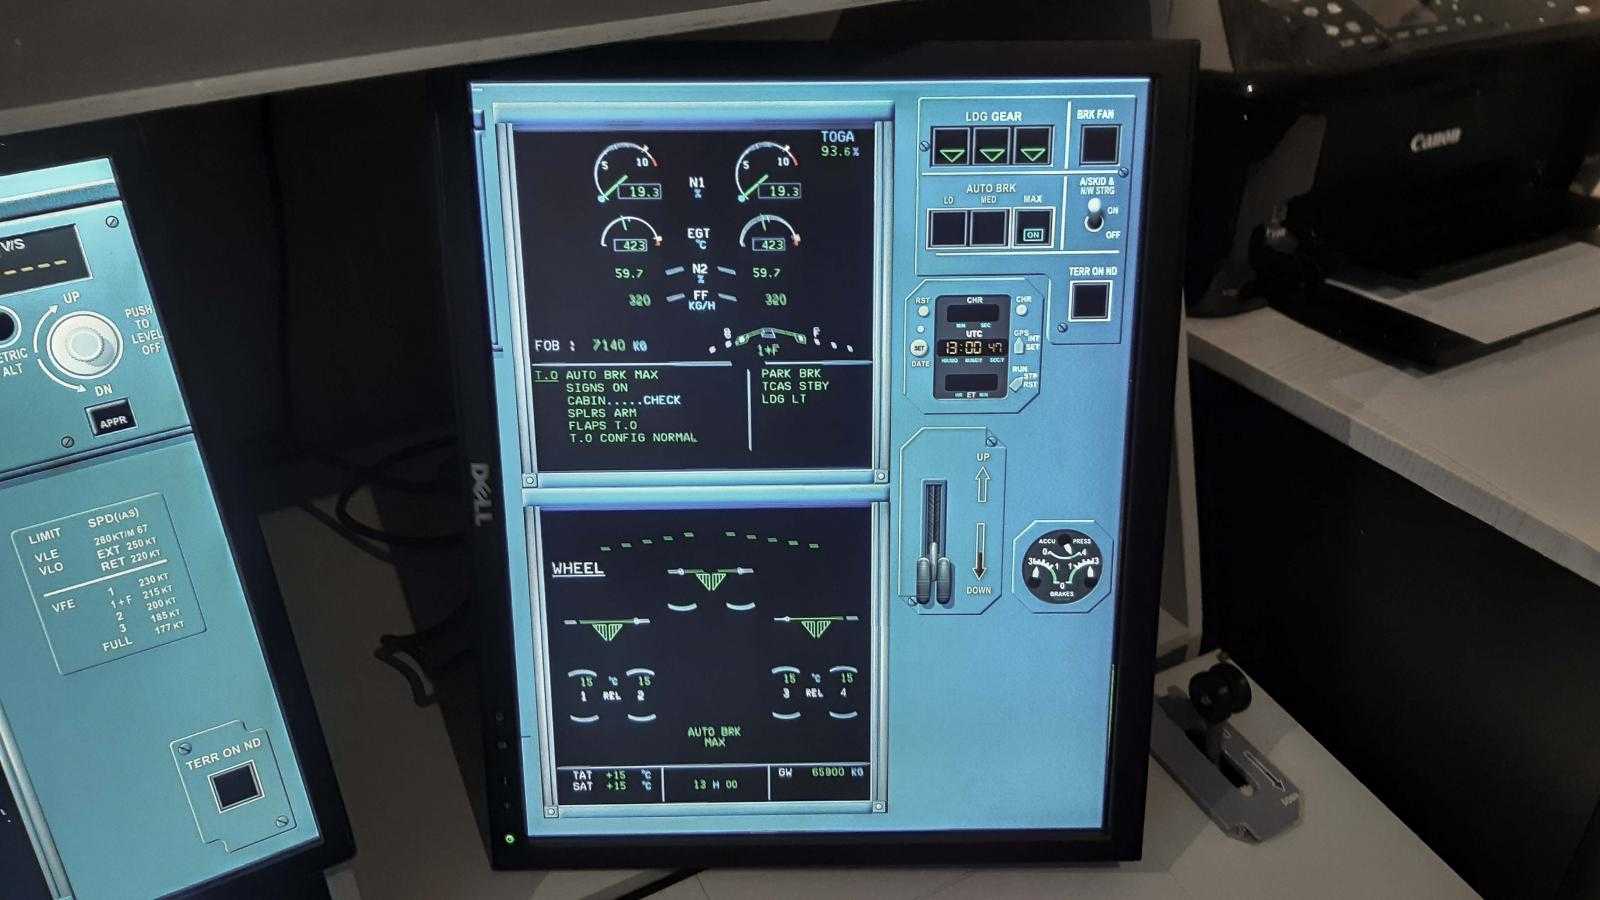 给大家安利一个XP11副屏幕显示仪表的插件，如有雷同请海涵-4658 